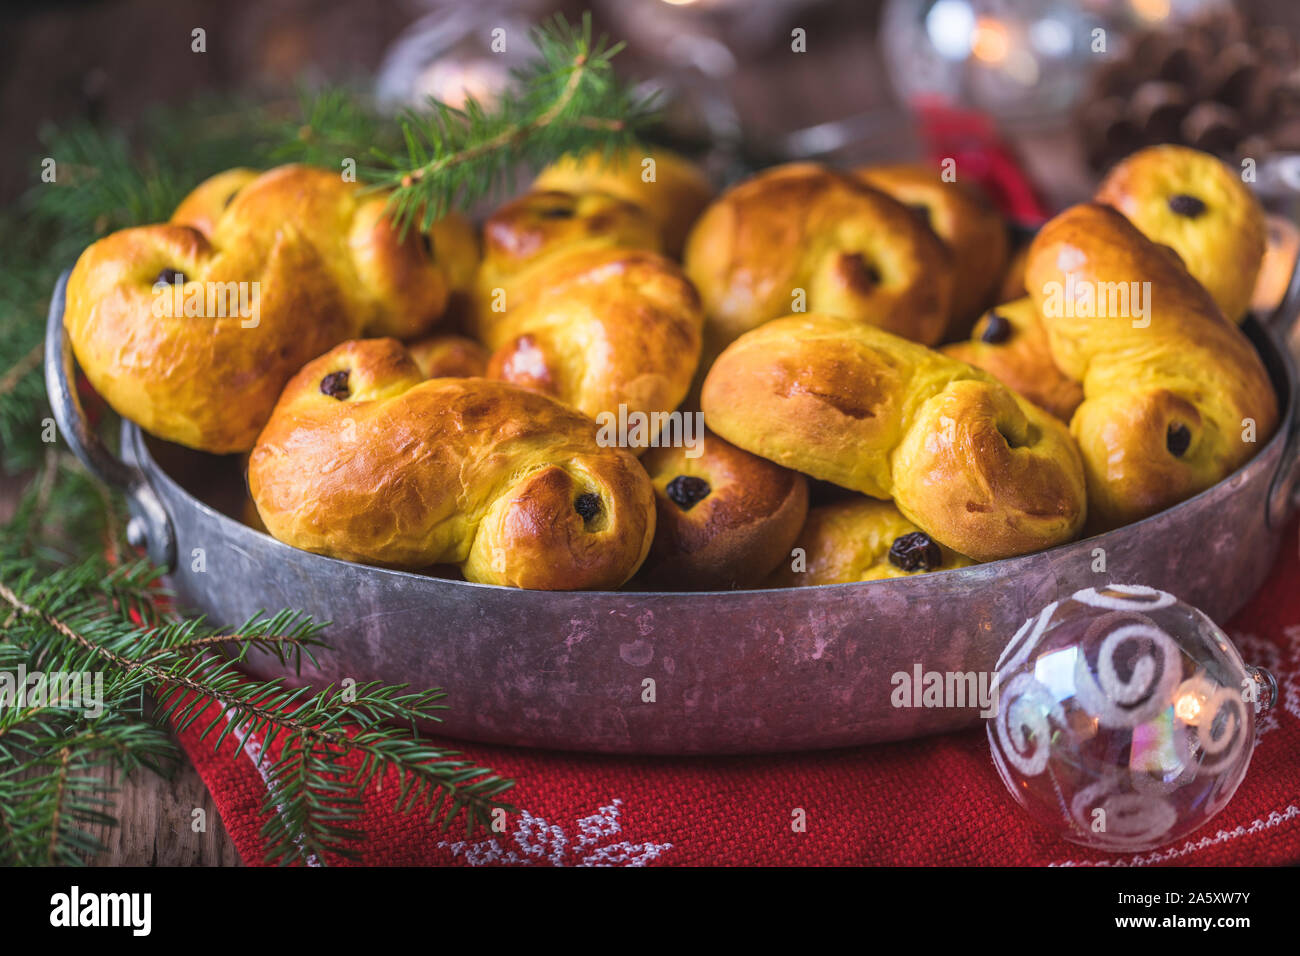 Un plateau composé de pains faits maison traditionnelle suédoise safran, également connu sous le nom de lussekatter ou lussebullar. Les pains ont les raisins et les jaunes sont shap Banque D'Images